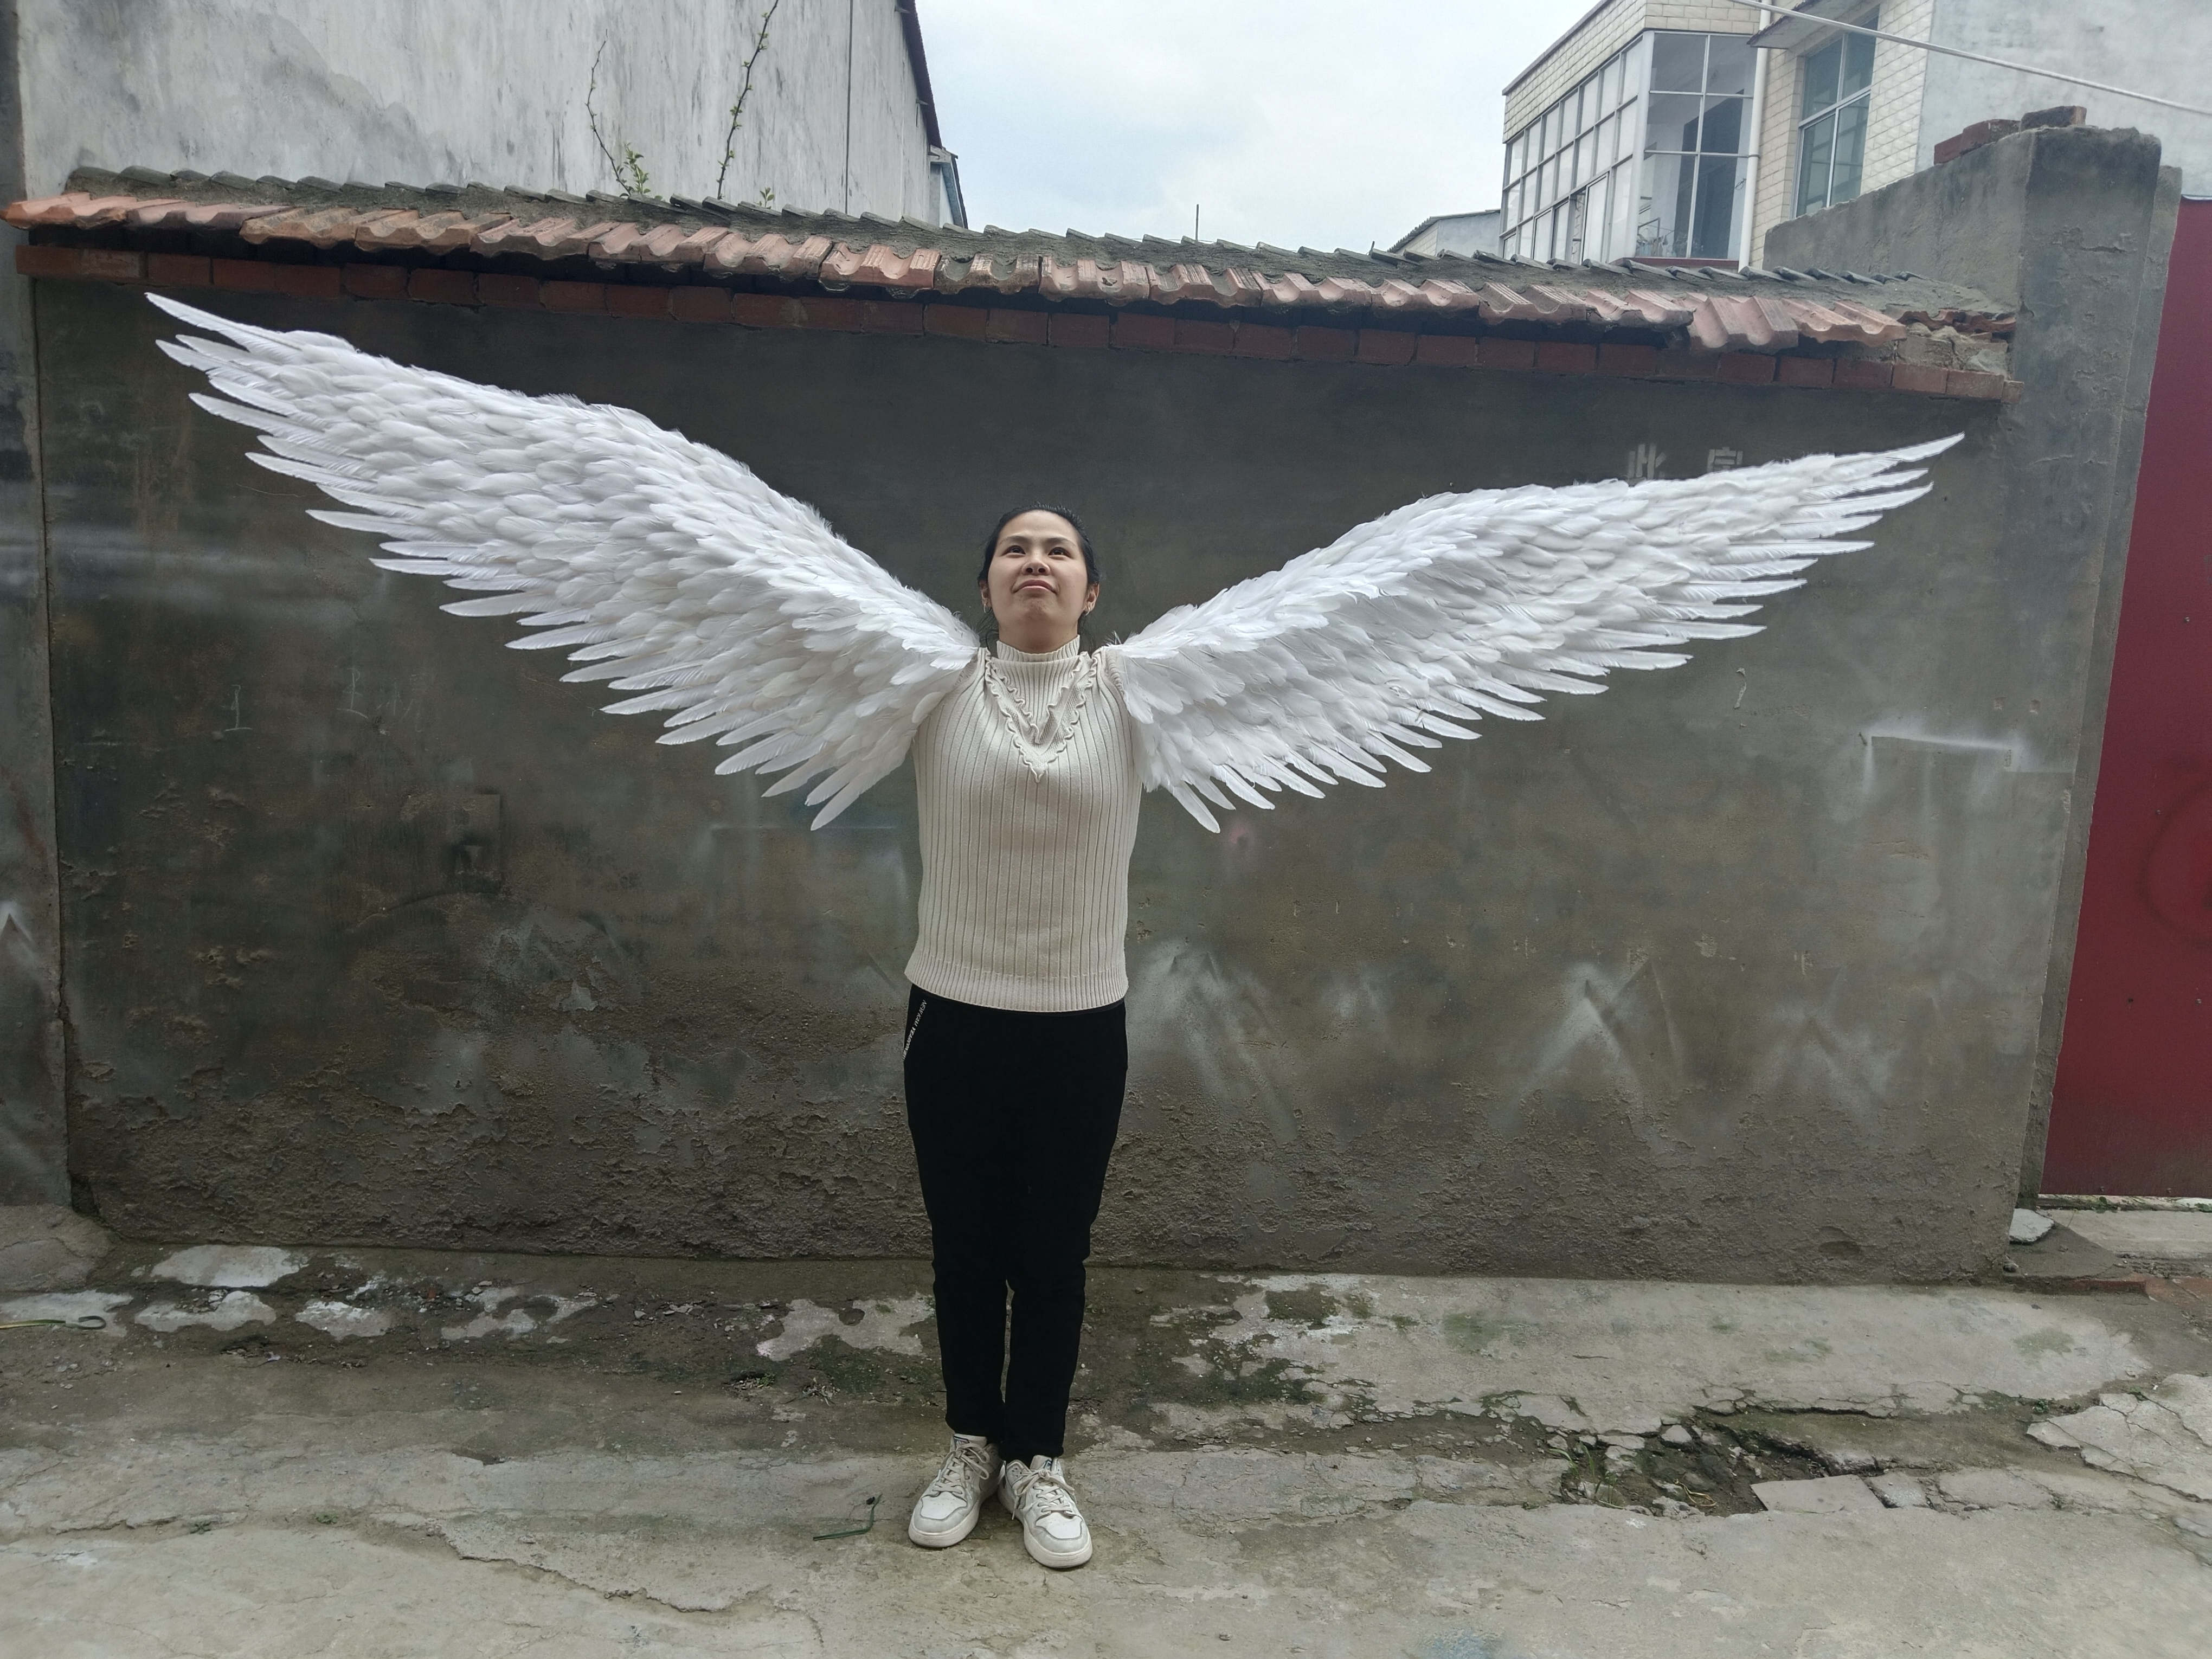 天使之翼舞蹈活动大型演出走秀写真套胳膊上白色羽毛翅膀舞台道具